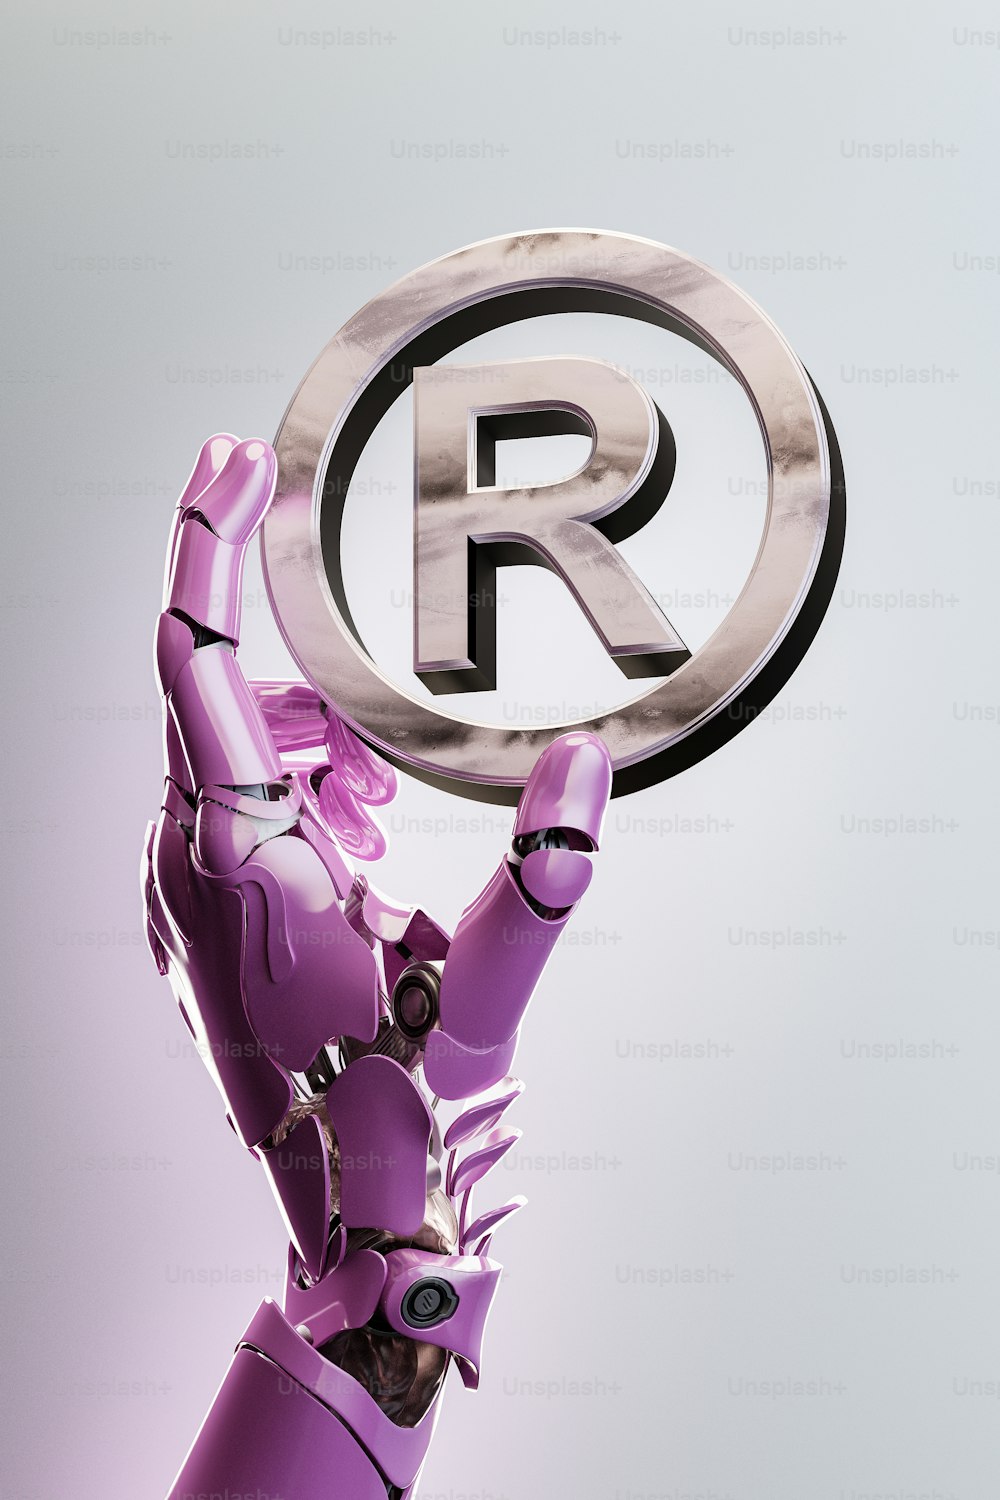 Un robot che regge un cartello con la lettera R su di esso